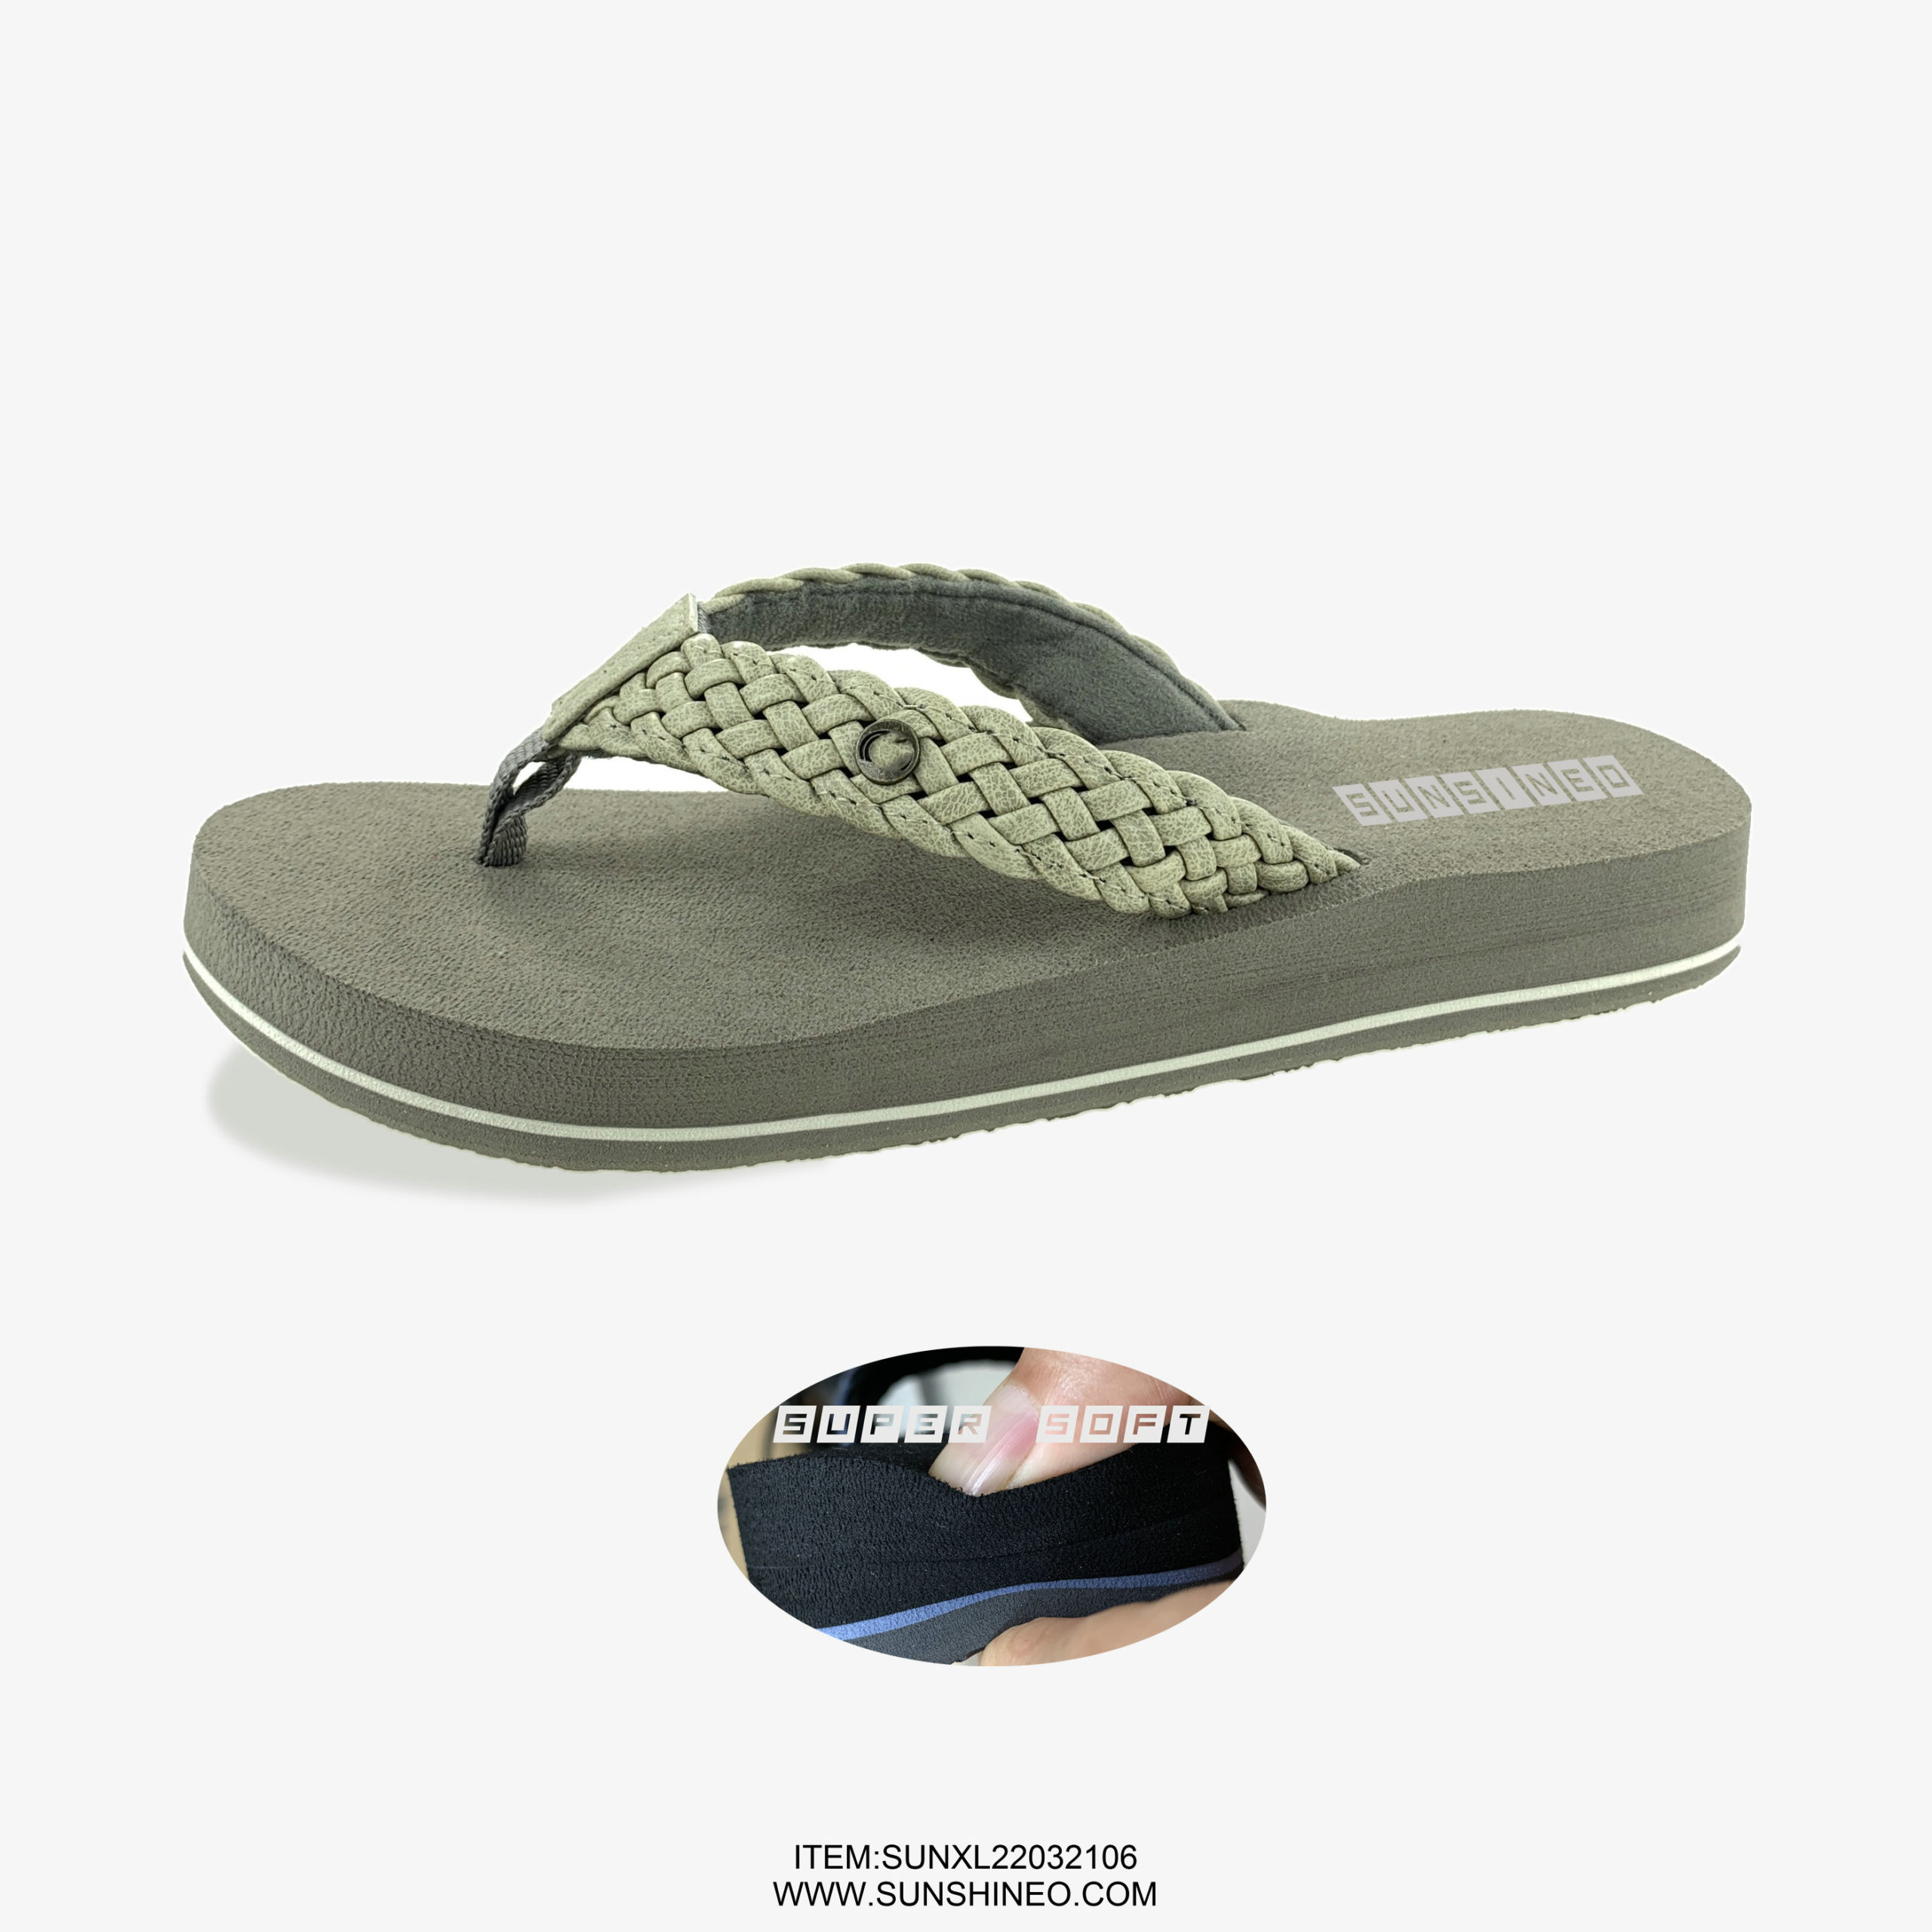 SUNXL22032106 flip flop sandals